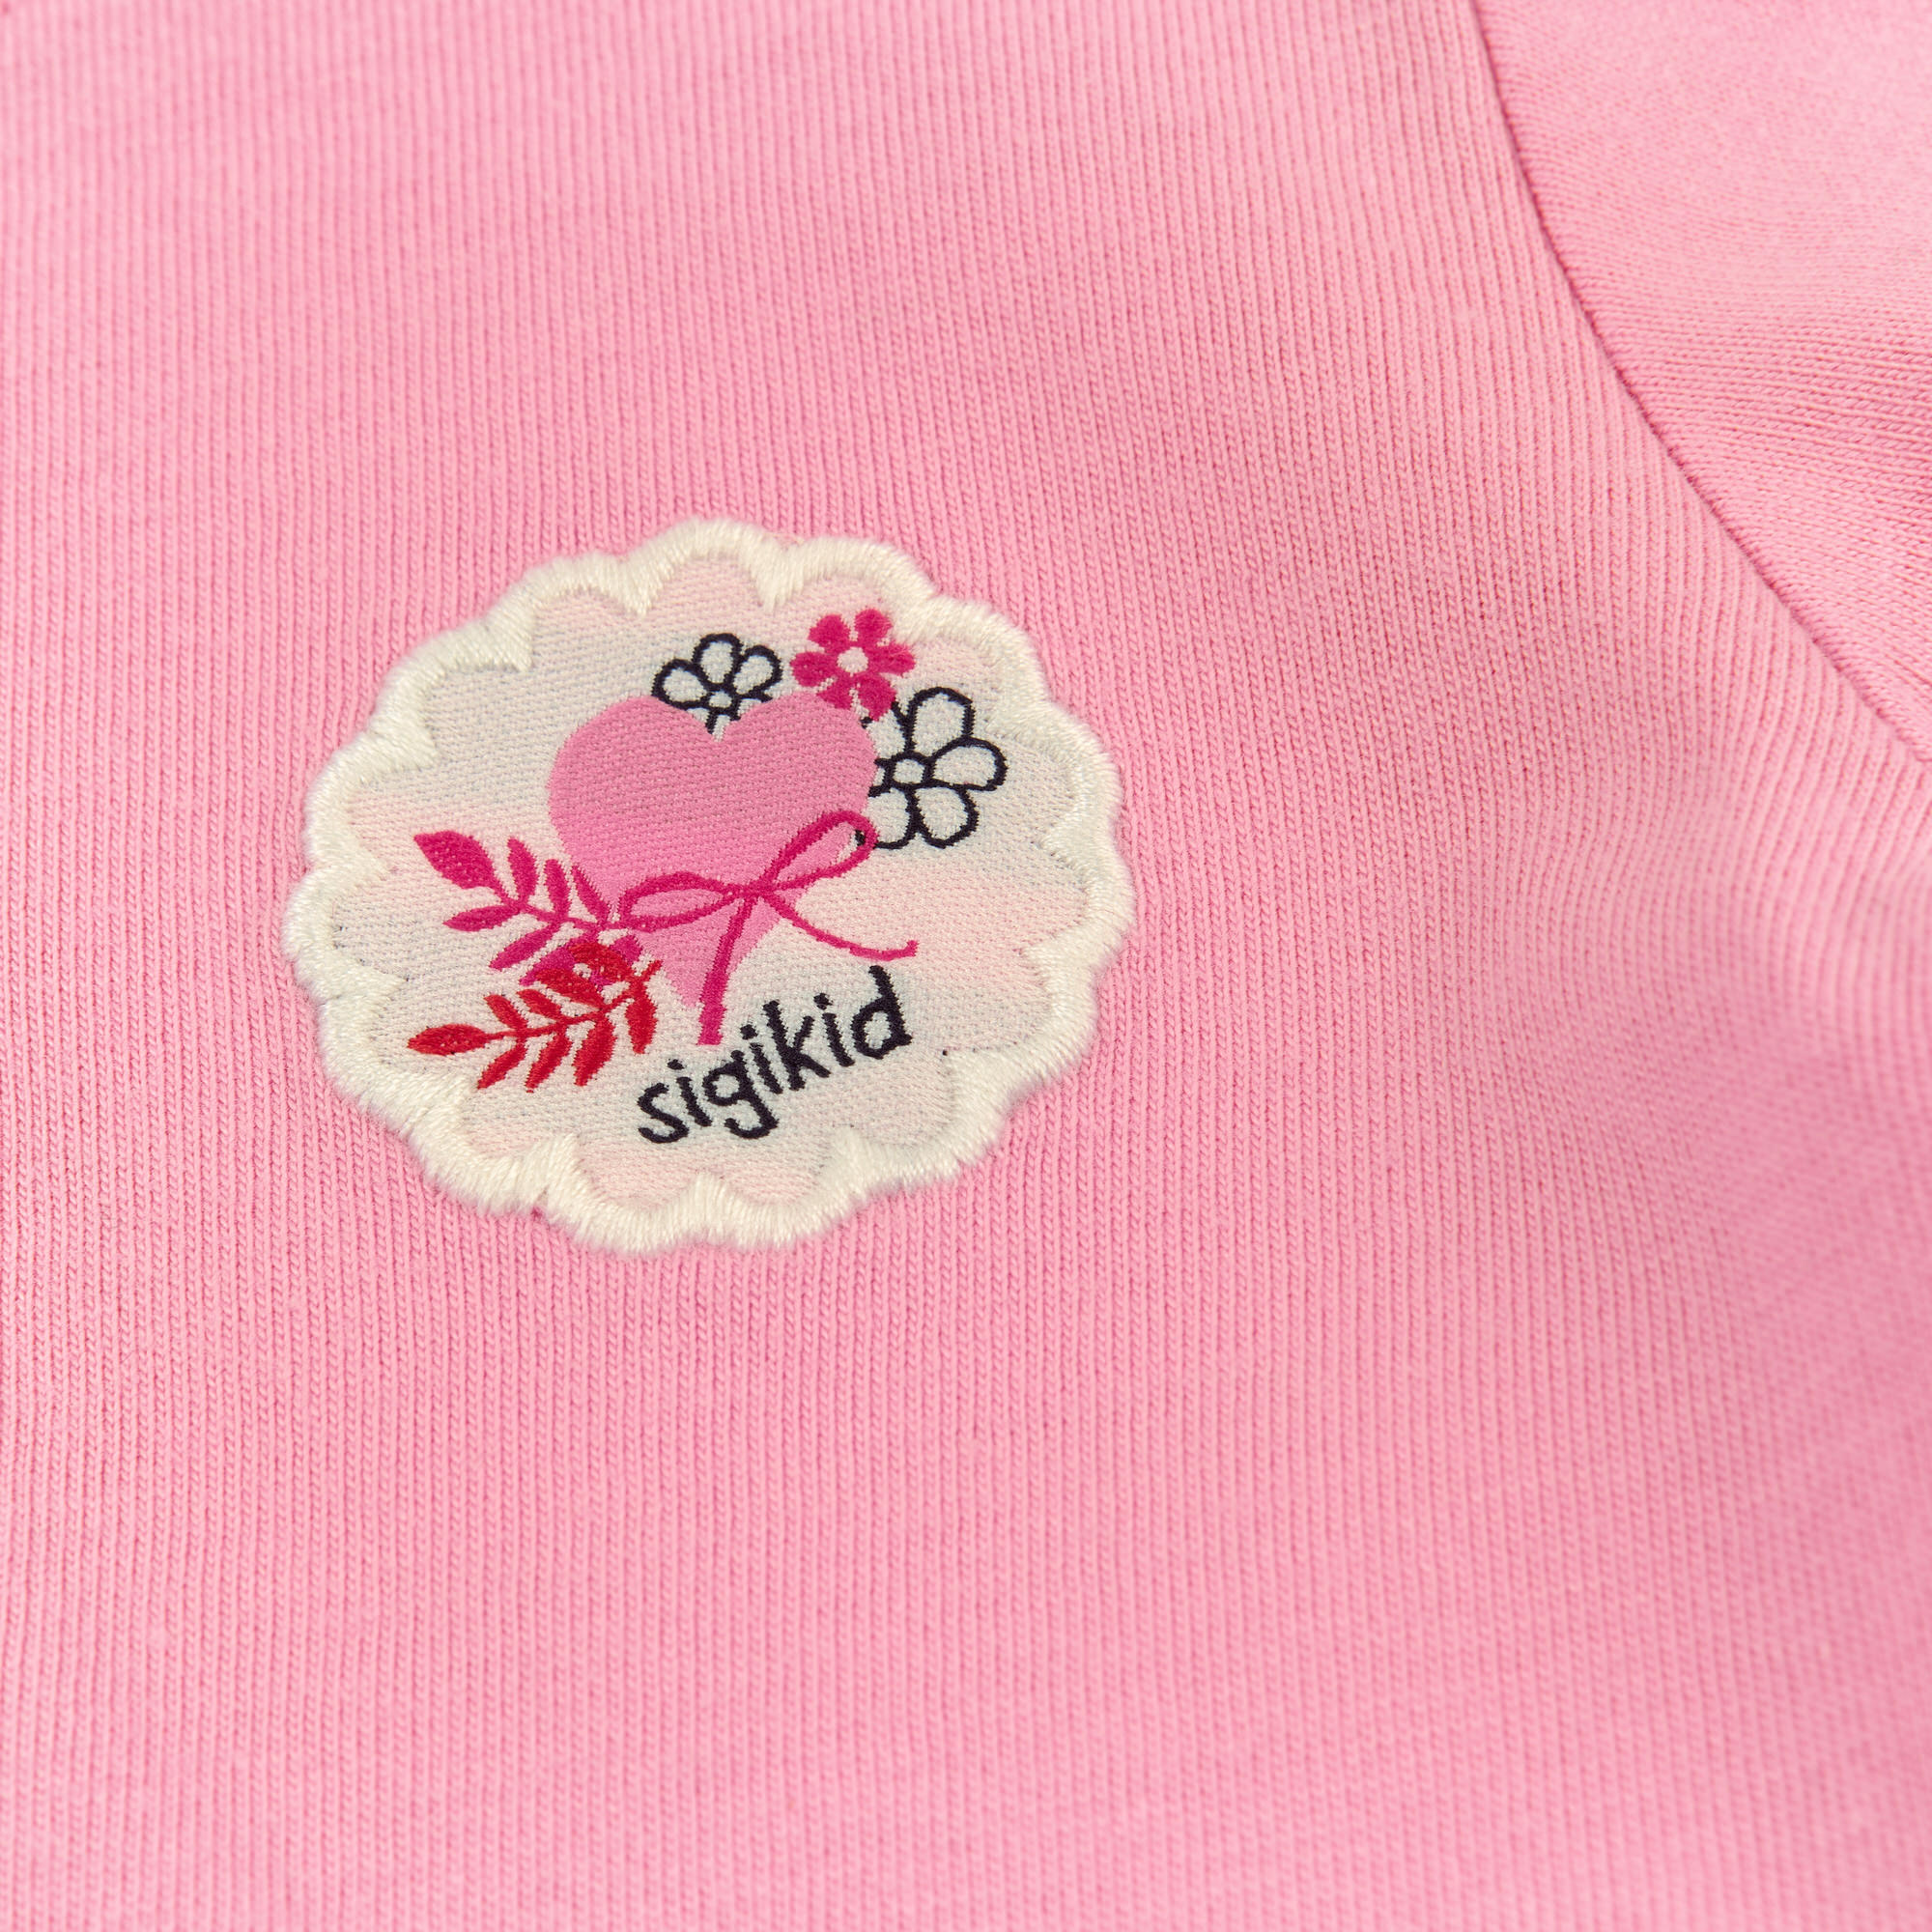 Rosa Baby T-Shirt mit Herzchen Stickerei